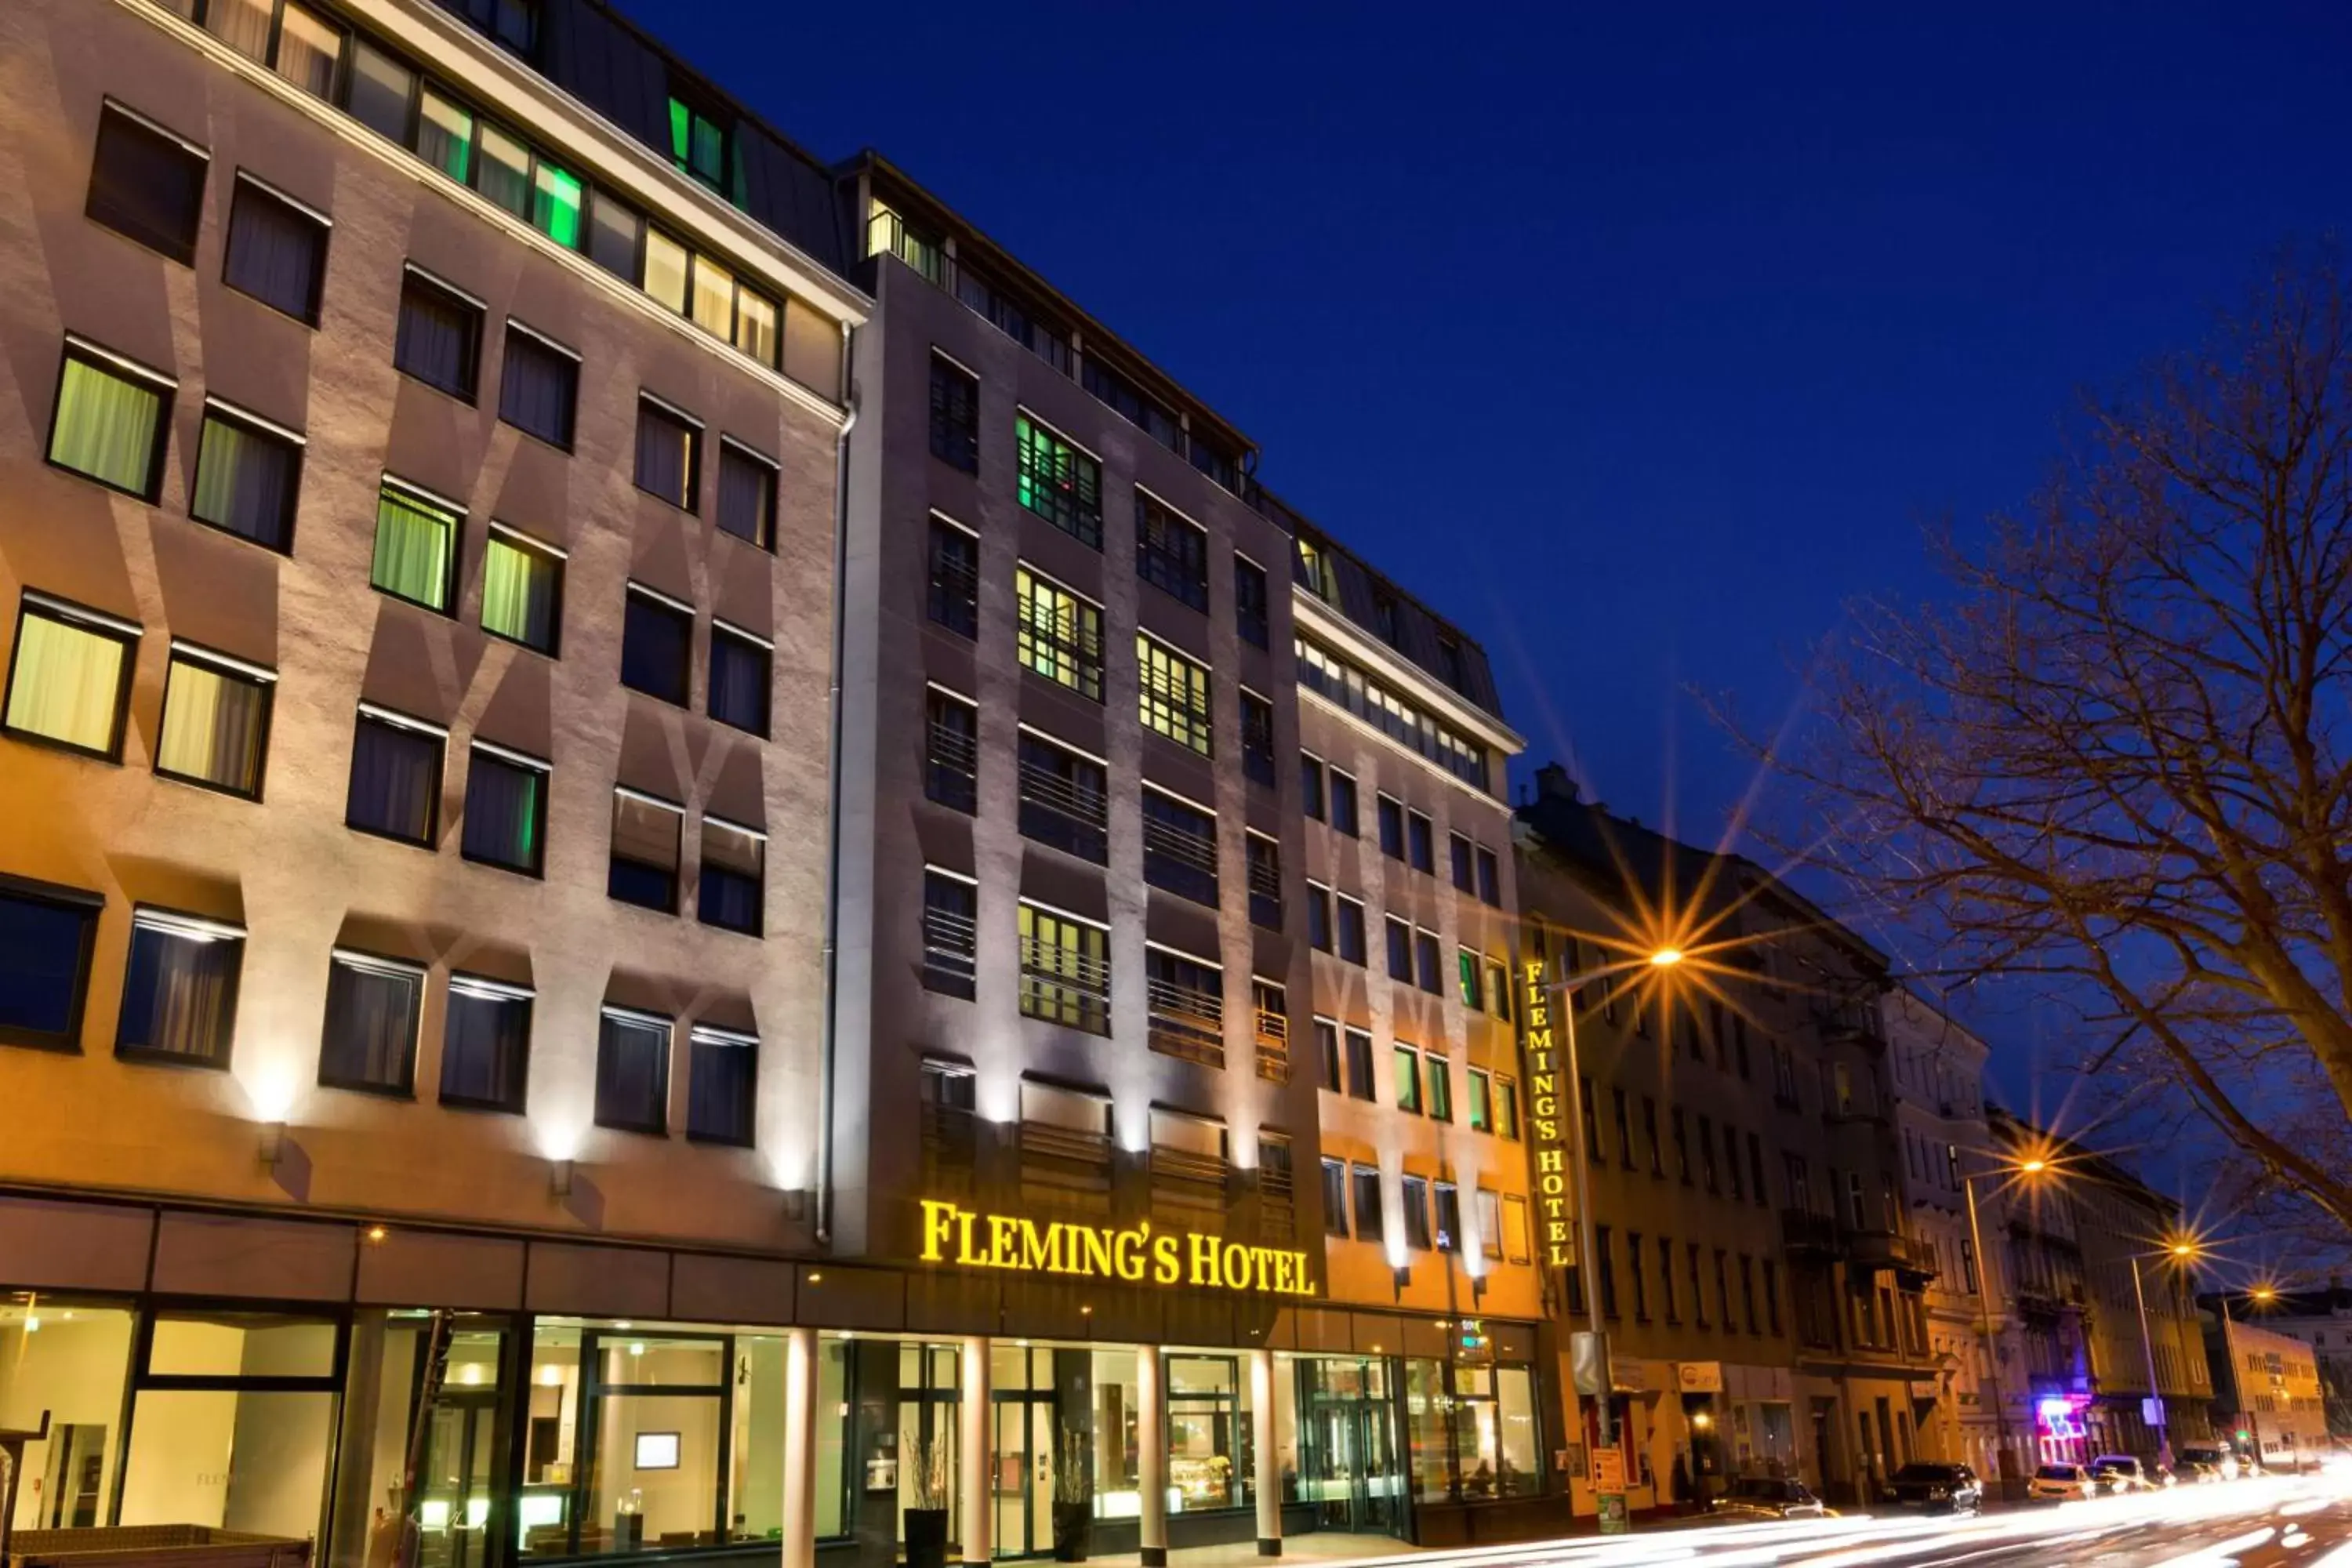 Property Building in Flemings Hotel Wien-Stadthalle former Flemings Conference Wien